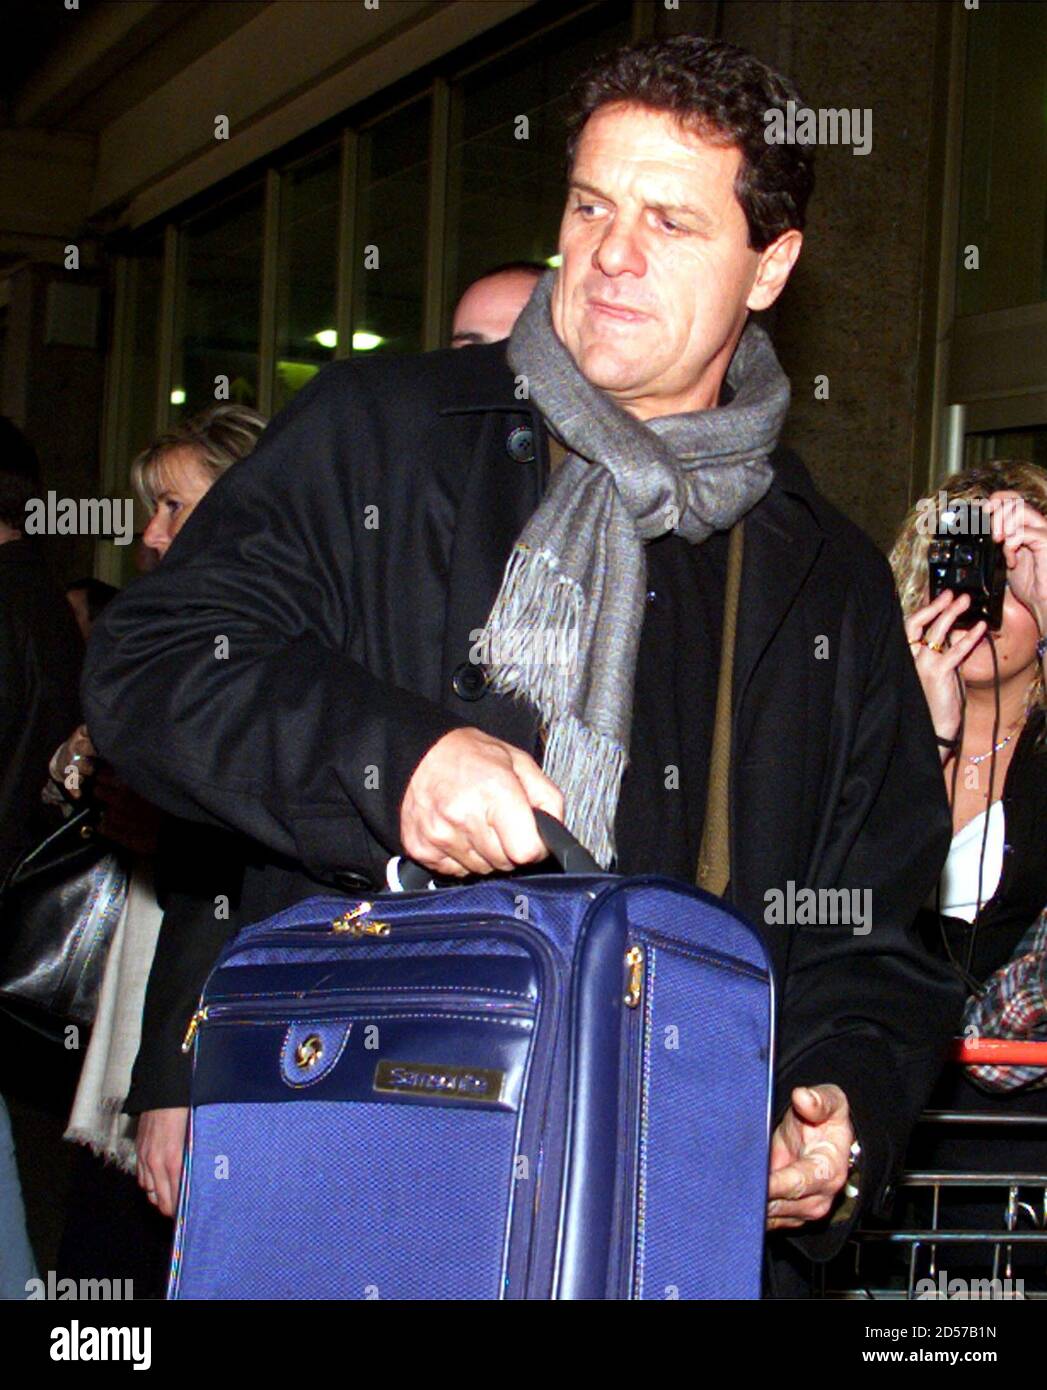 L'entraîneur italien de football Fabio Capello transporte ses bagages à  l'aéroport Barajas de Madrid en février 21. Selon les médias, Capello, qui  a autrefois entraîné le Real Madrid et l'AC Milan, remplacera